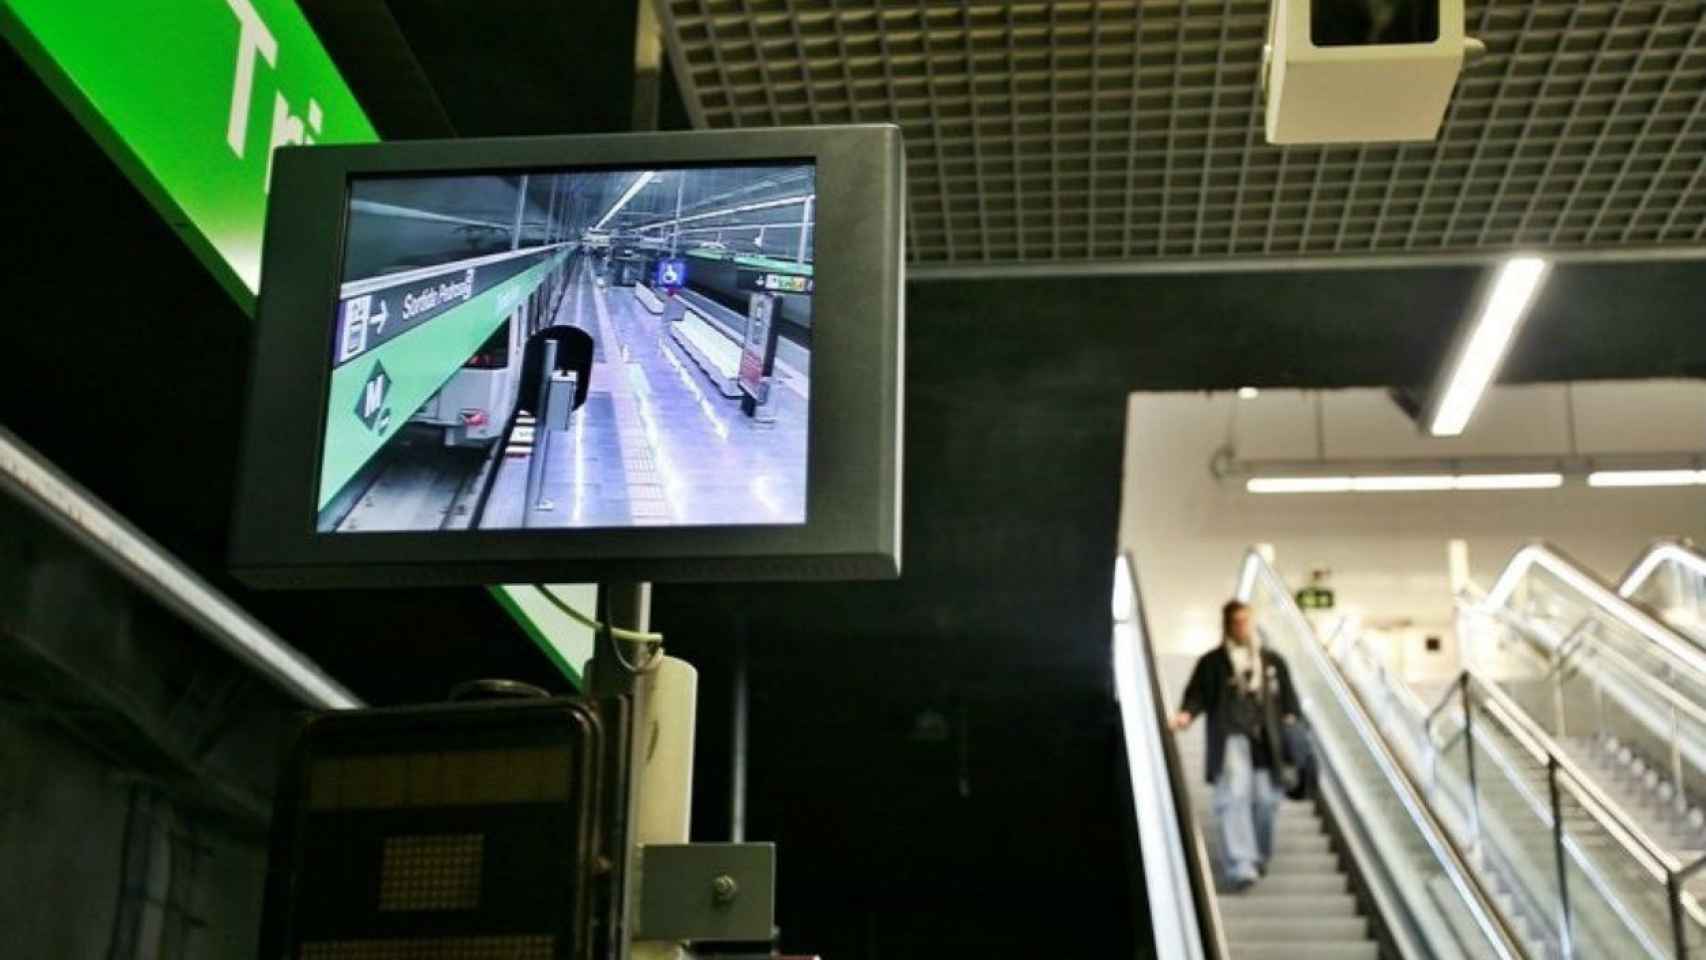 Huelga del metro: esperas superiores a una hora en Barcelona